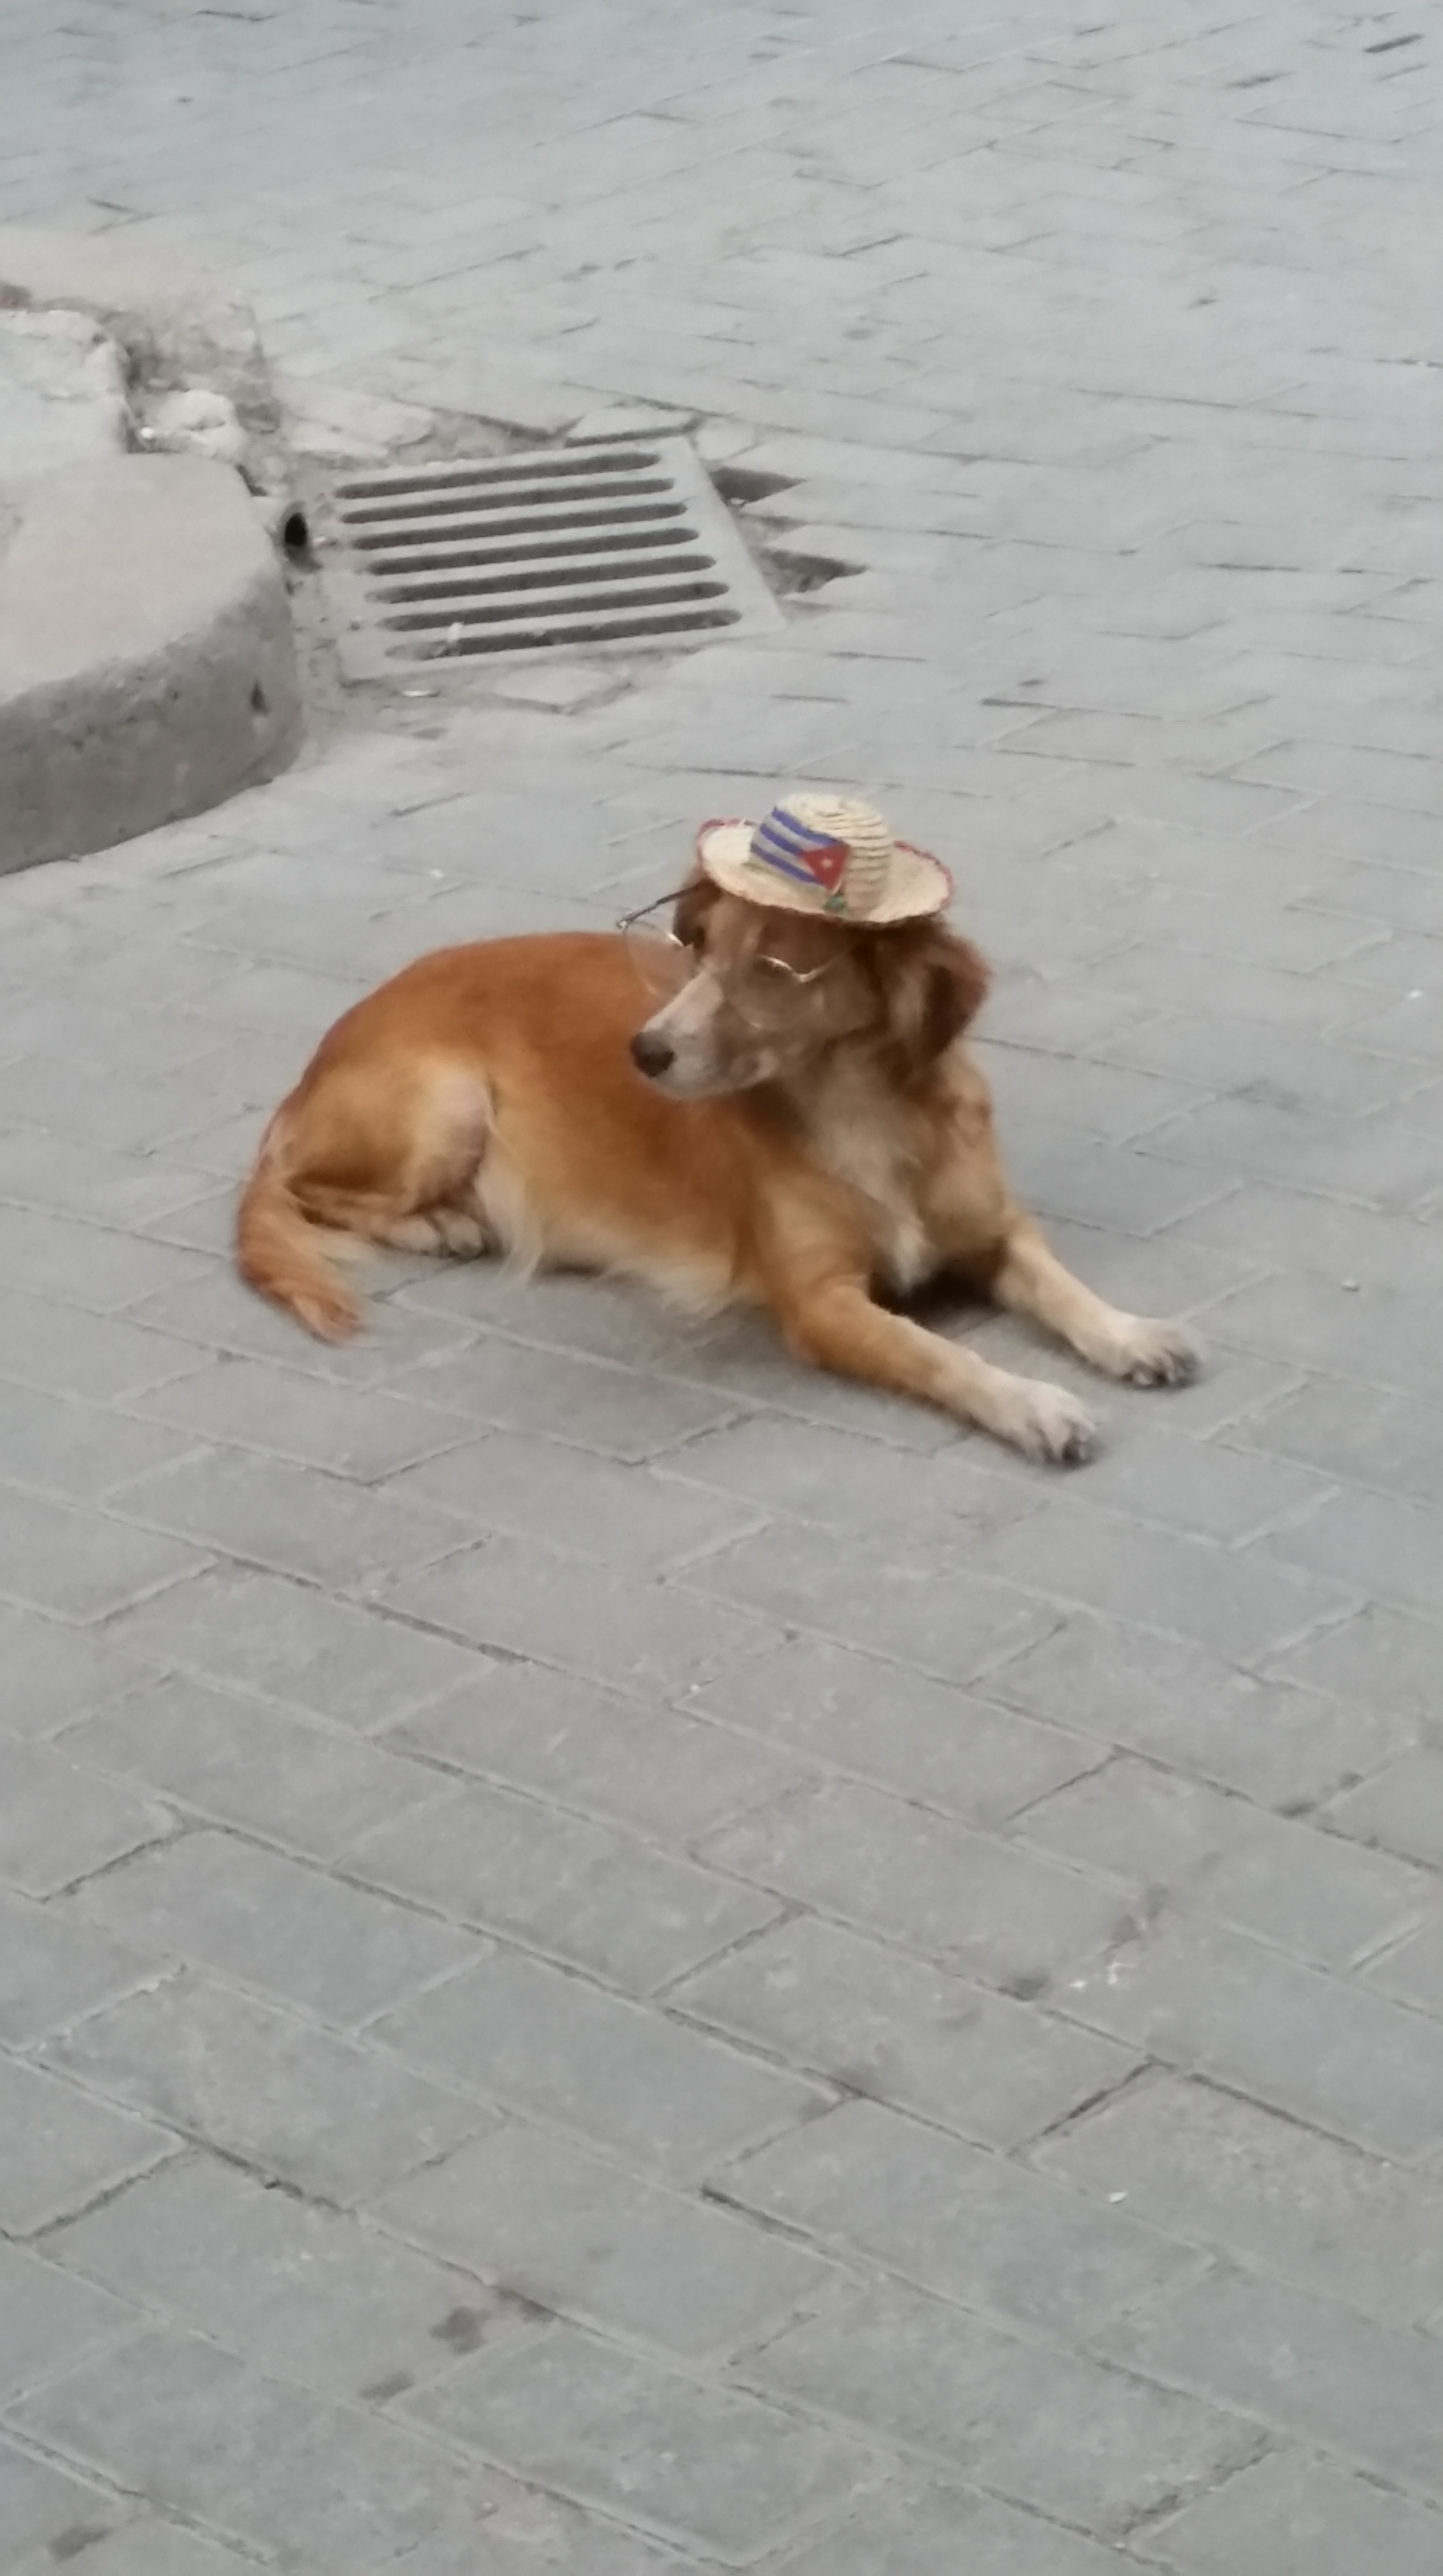 Cuban Street Dog wearing hat Havana Cuba